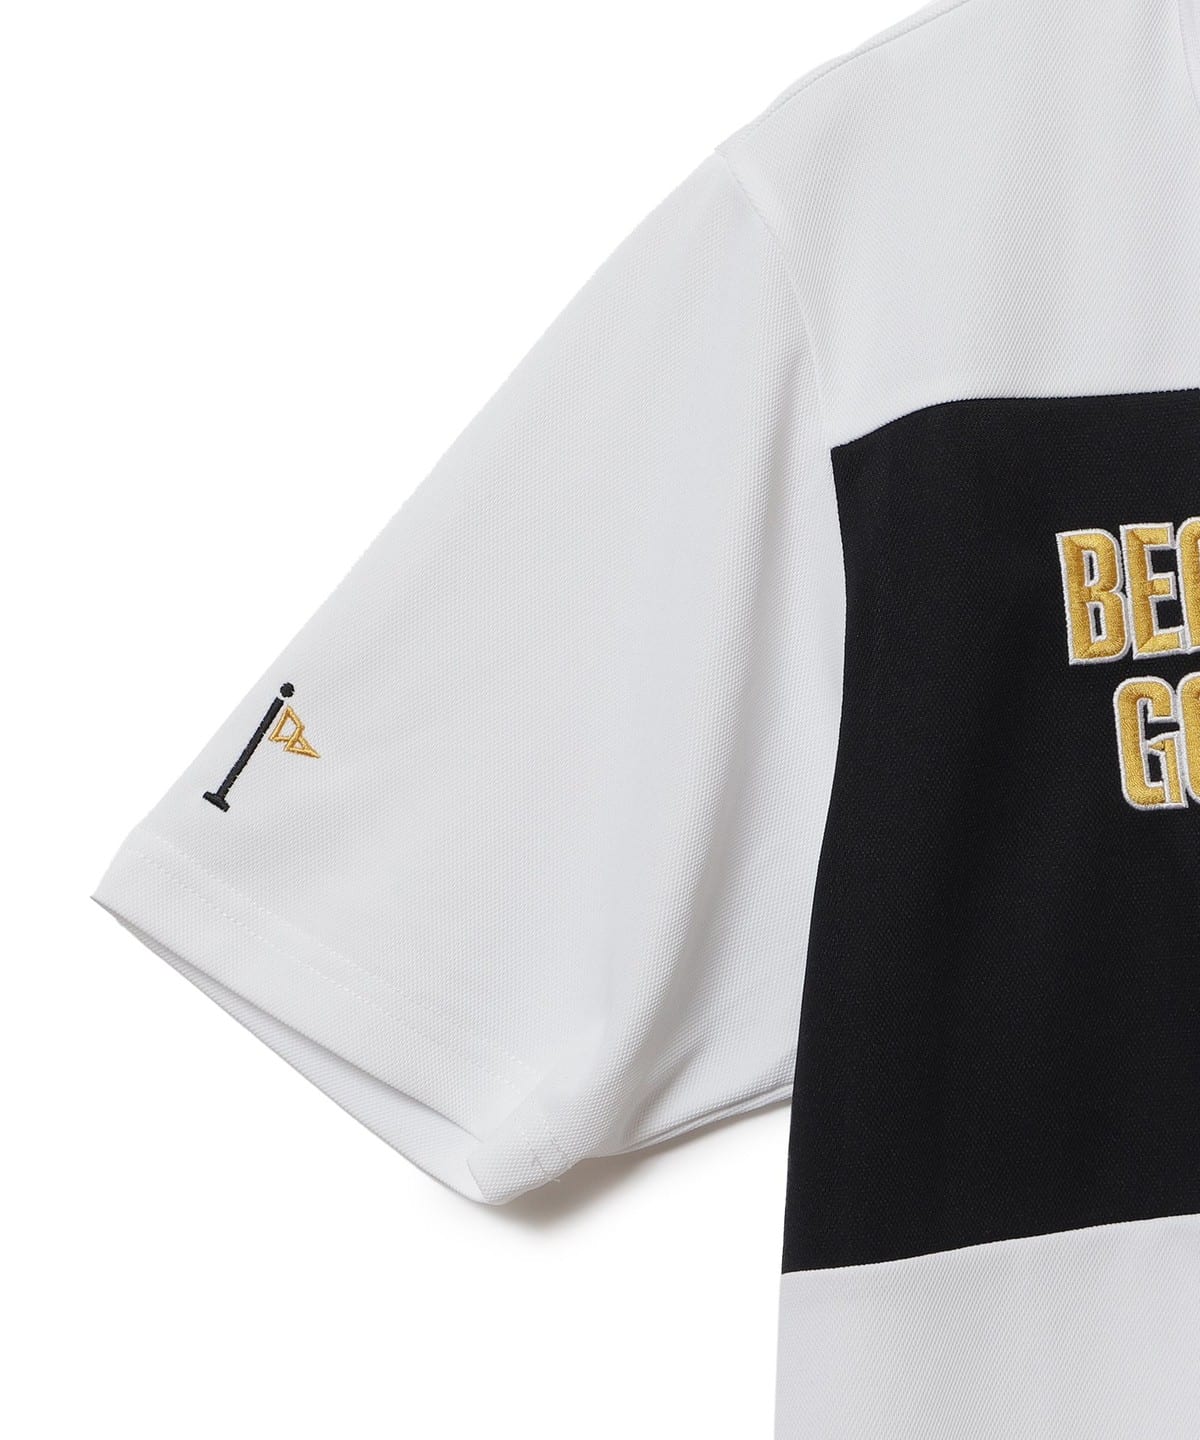 2021年製 ポロシャツ BEAMS GOLF ORANGE LABEL スウィッチング スターフラッグ 鹿の子ポロシャツ 